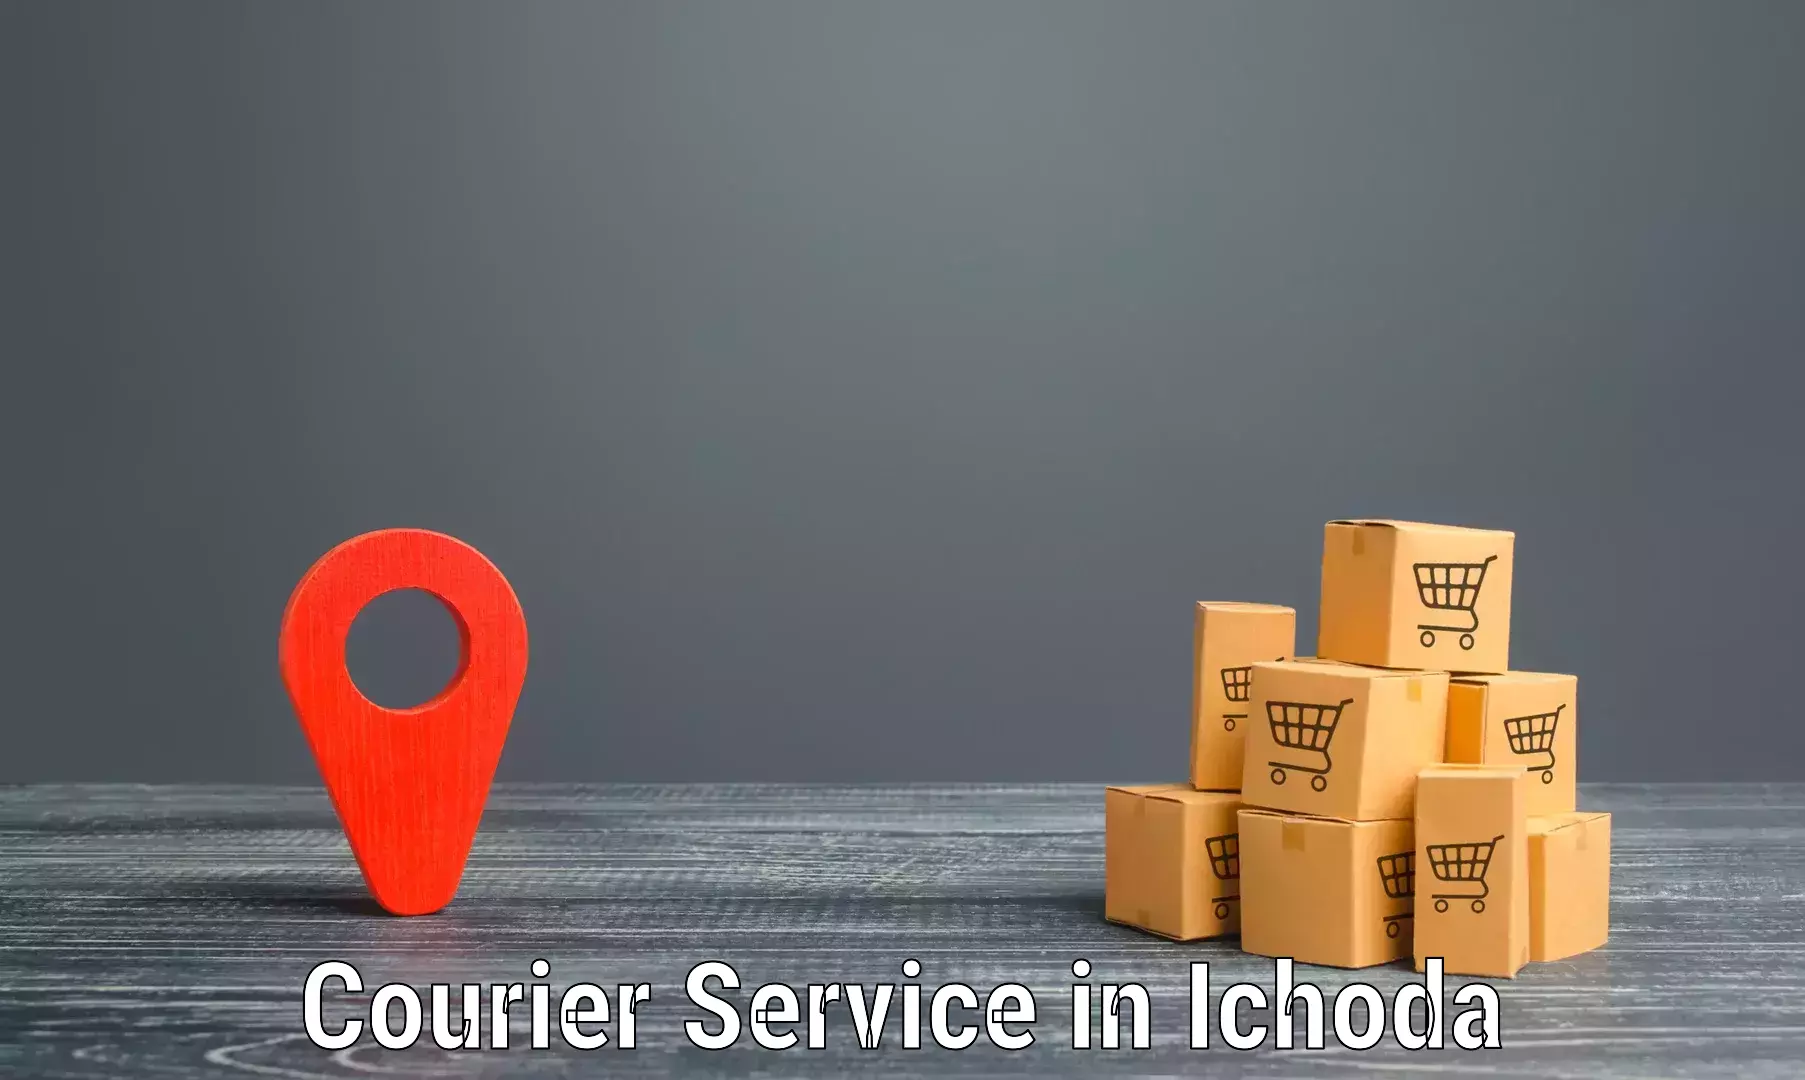 Efficient parcel service in Ichoda